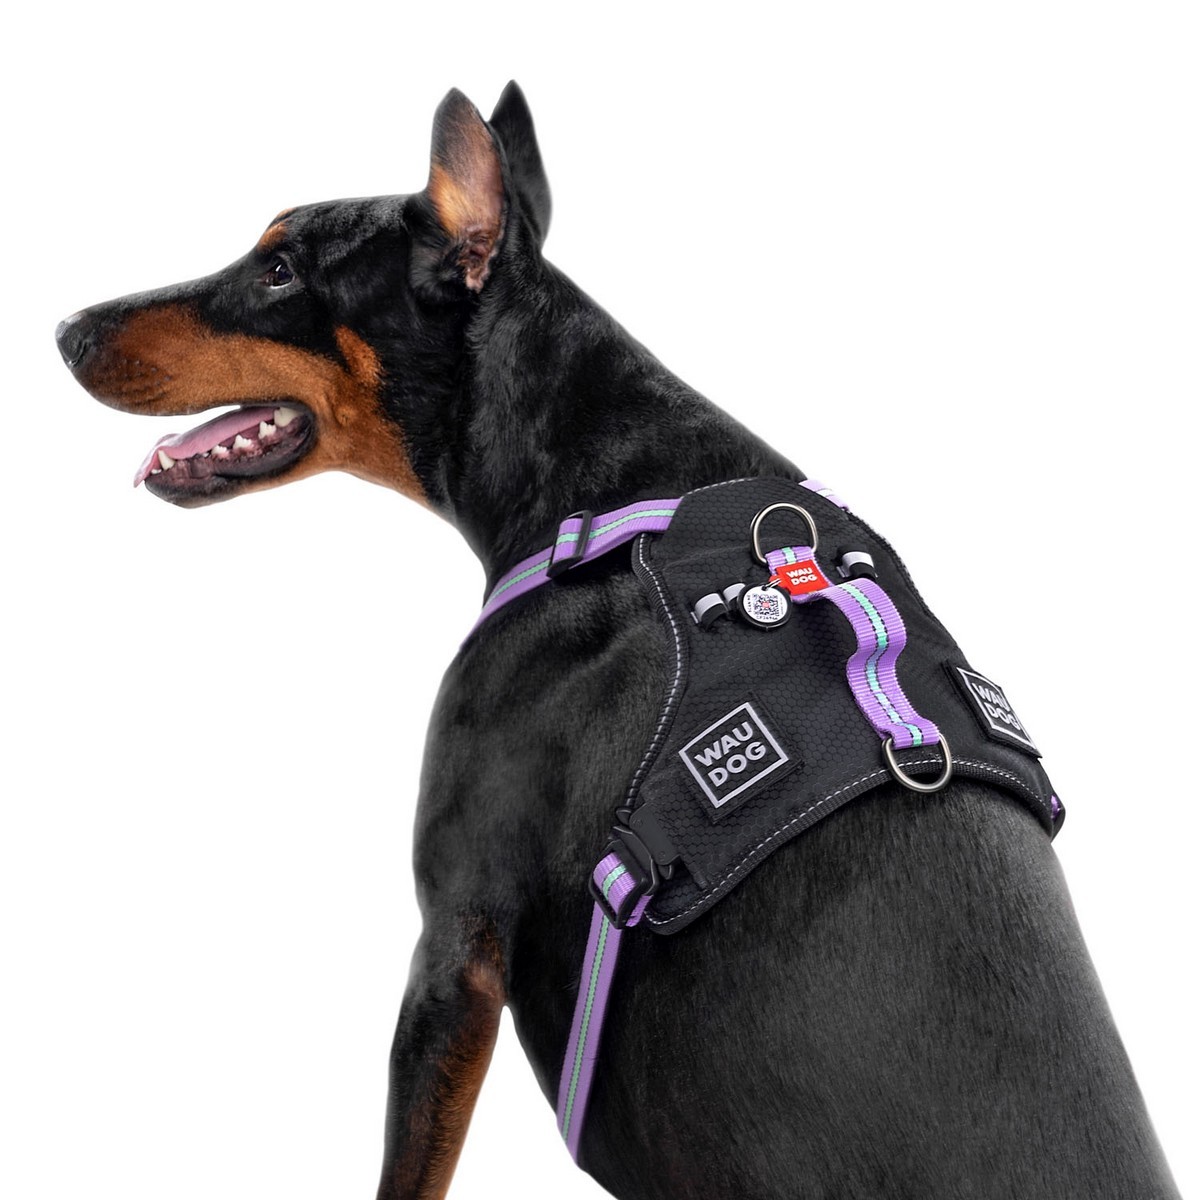 Szelki dla psa WAUDOG Nylon z paszportem QR, bezpieczne, metalowa fastex, fioletowa